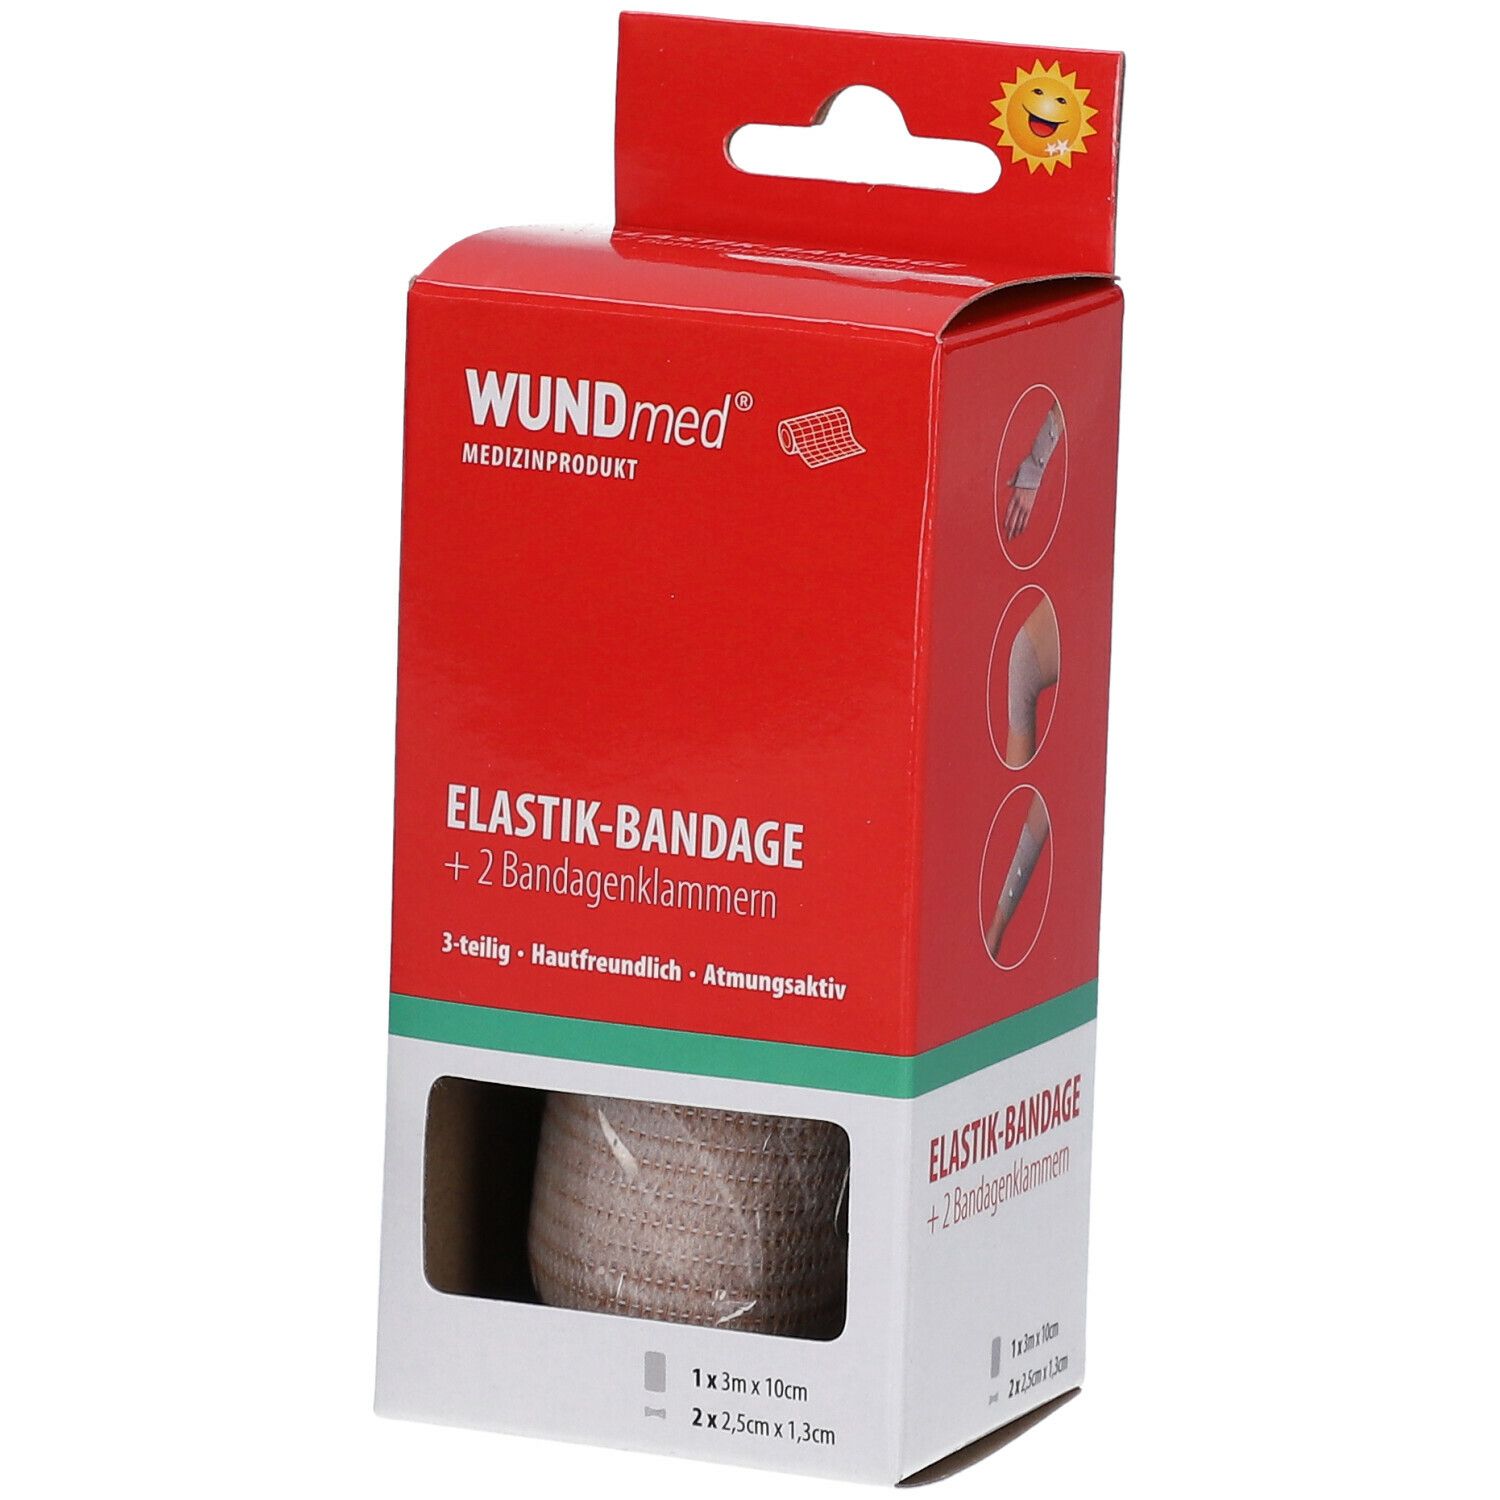 WUNDmed® Elastik-Bandage 10 cm x 3 m mit Bandageklammern